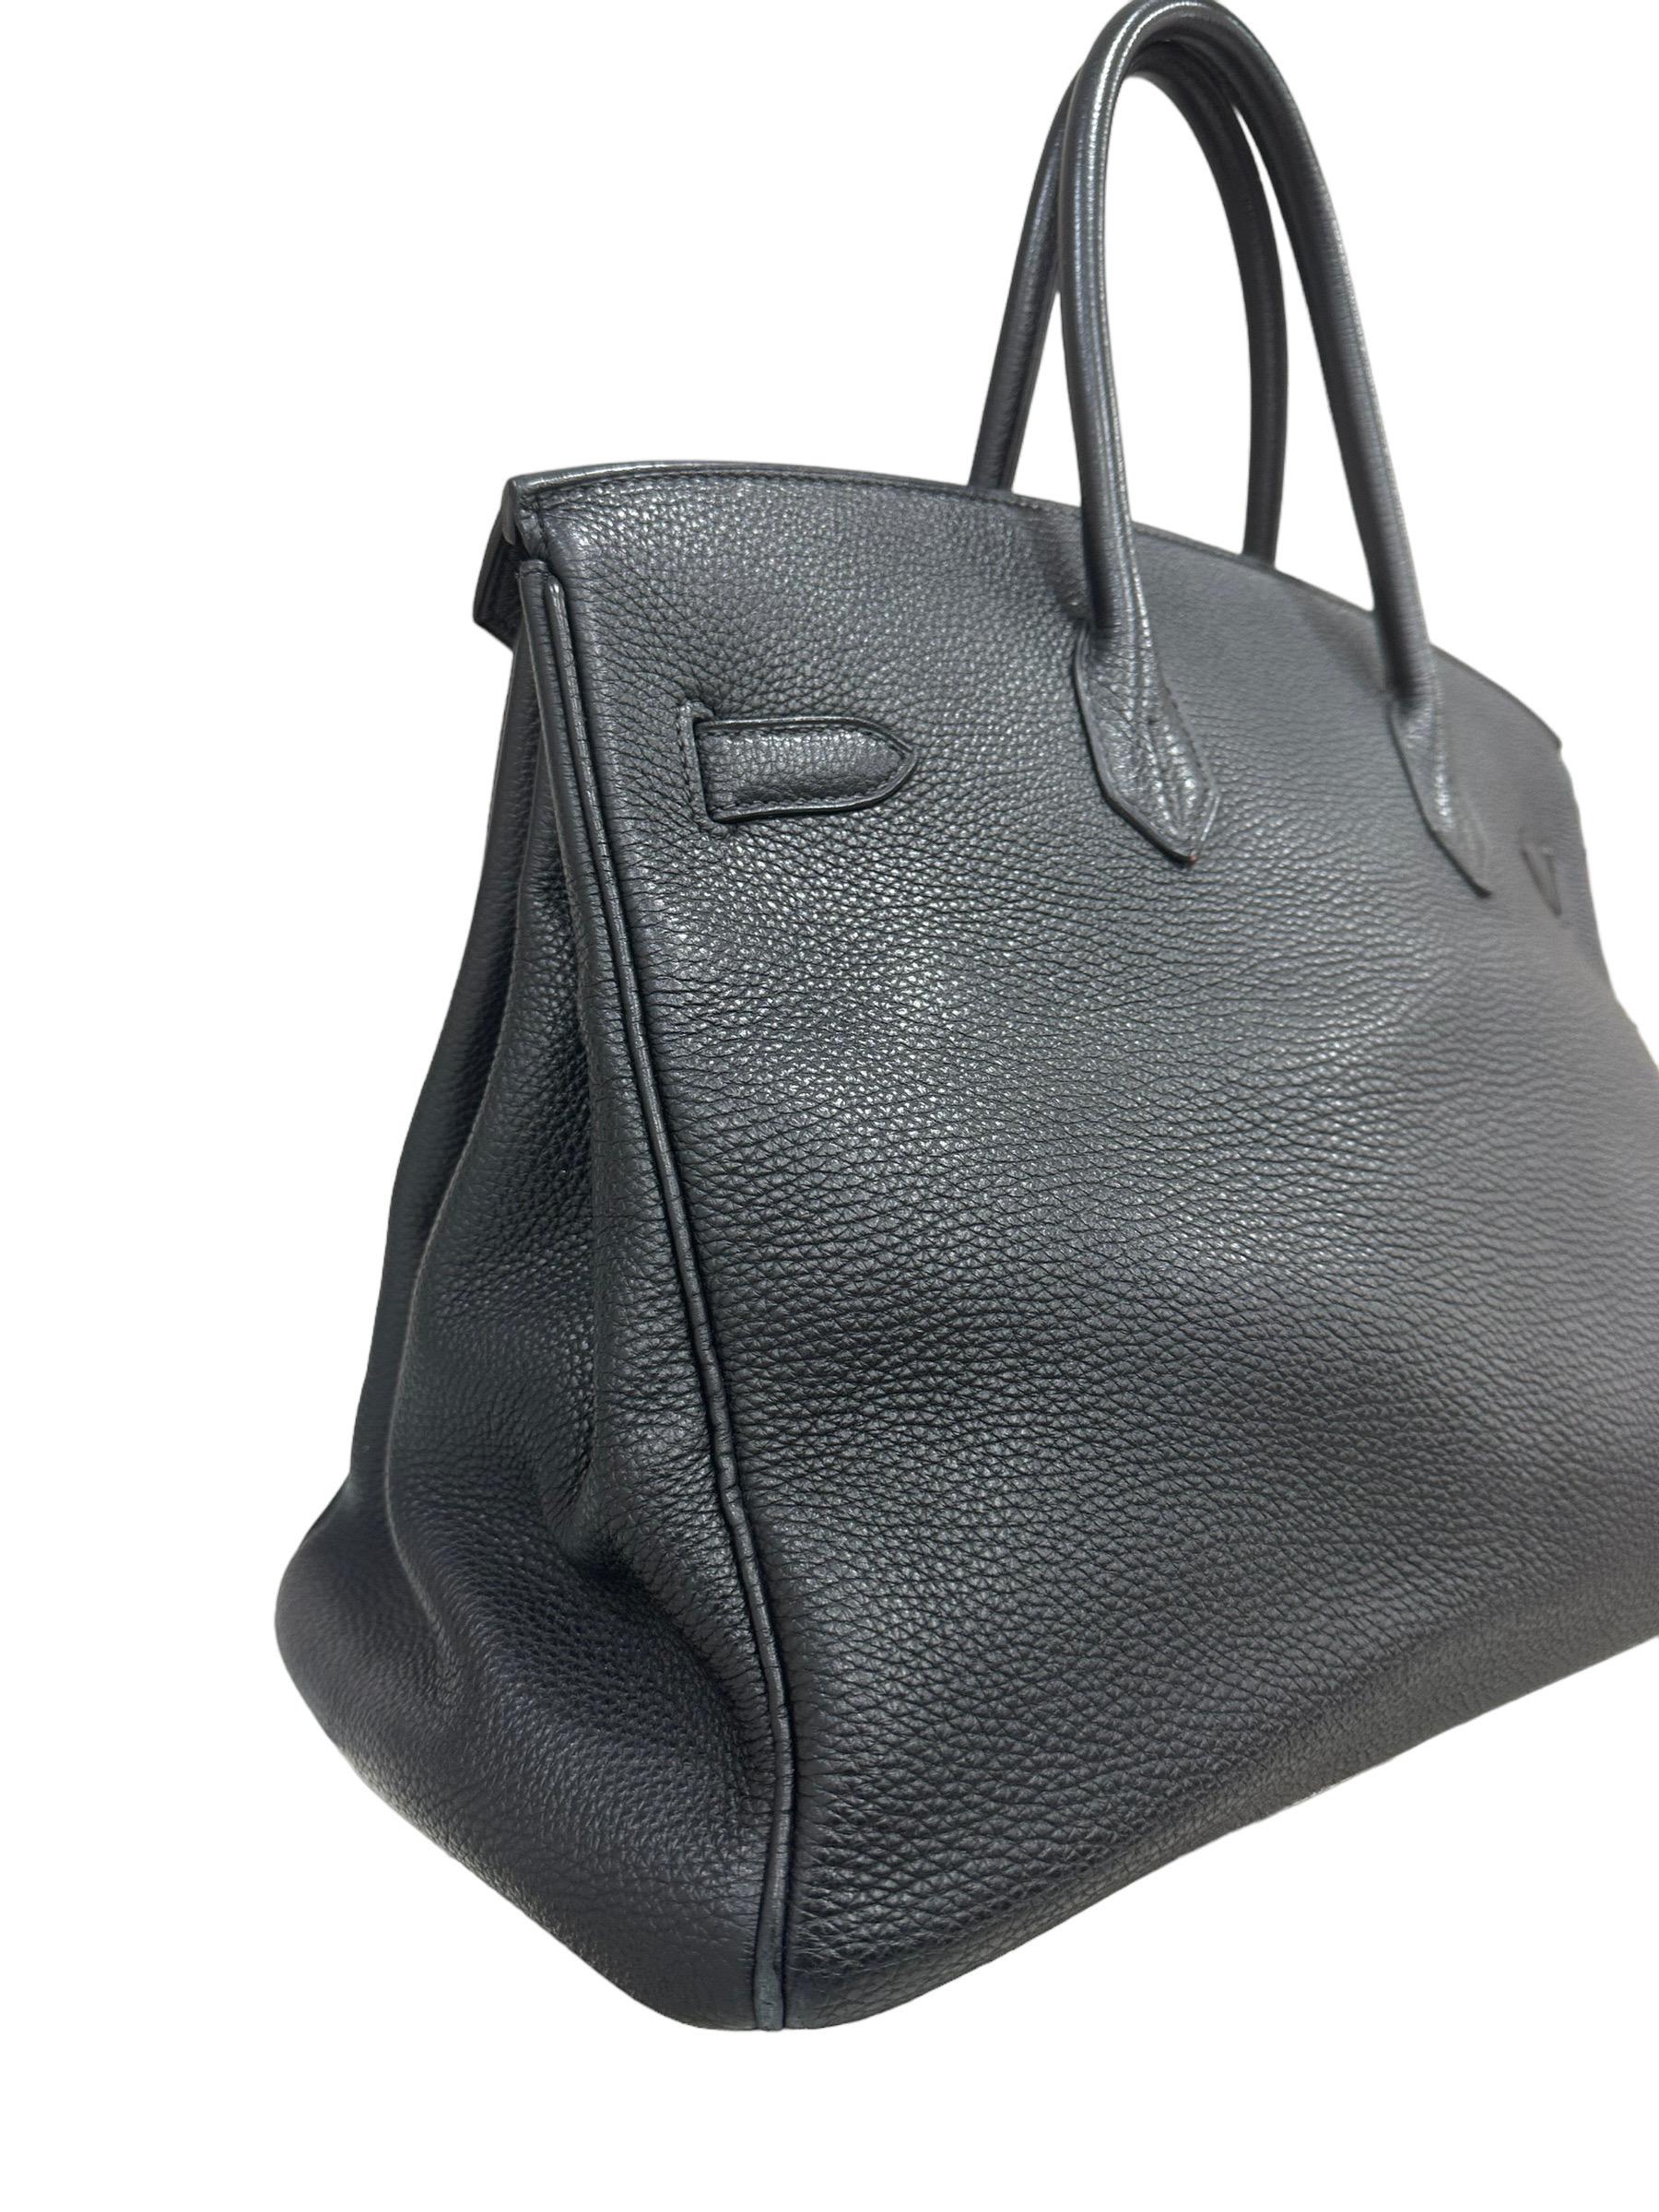 2007 Hermès Birkin Bag Togo Leather Plomb Top Handle Bag For Sale 3